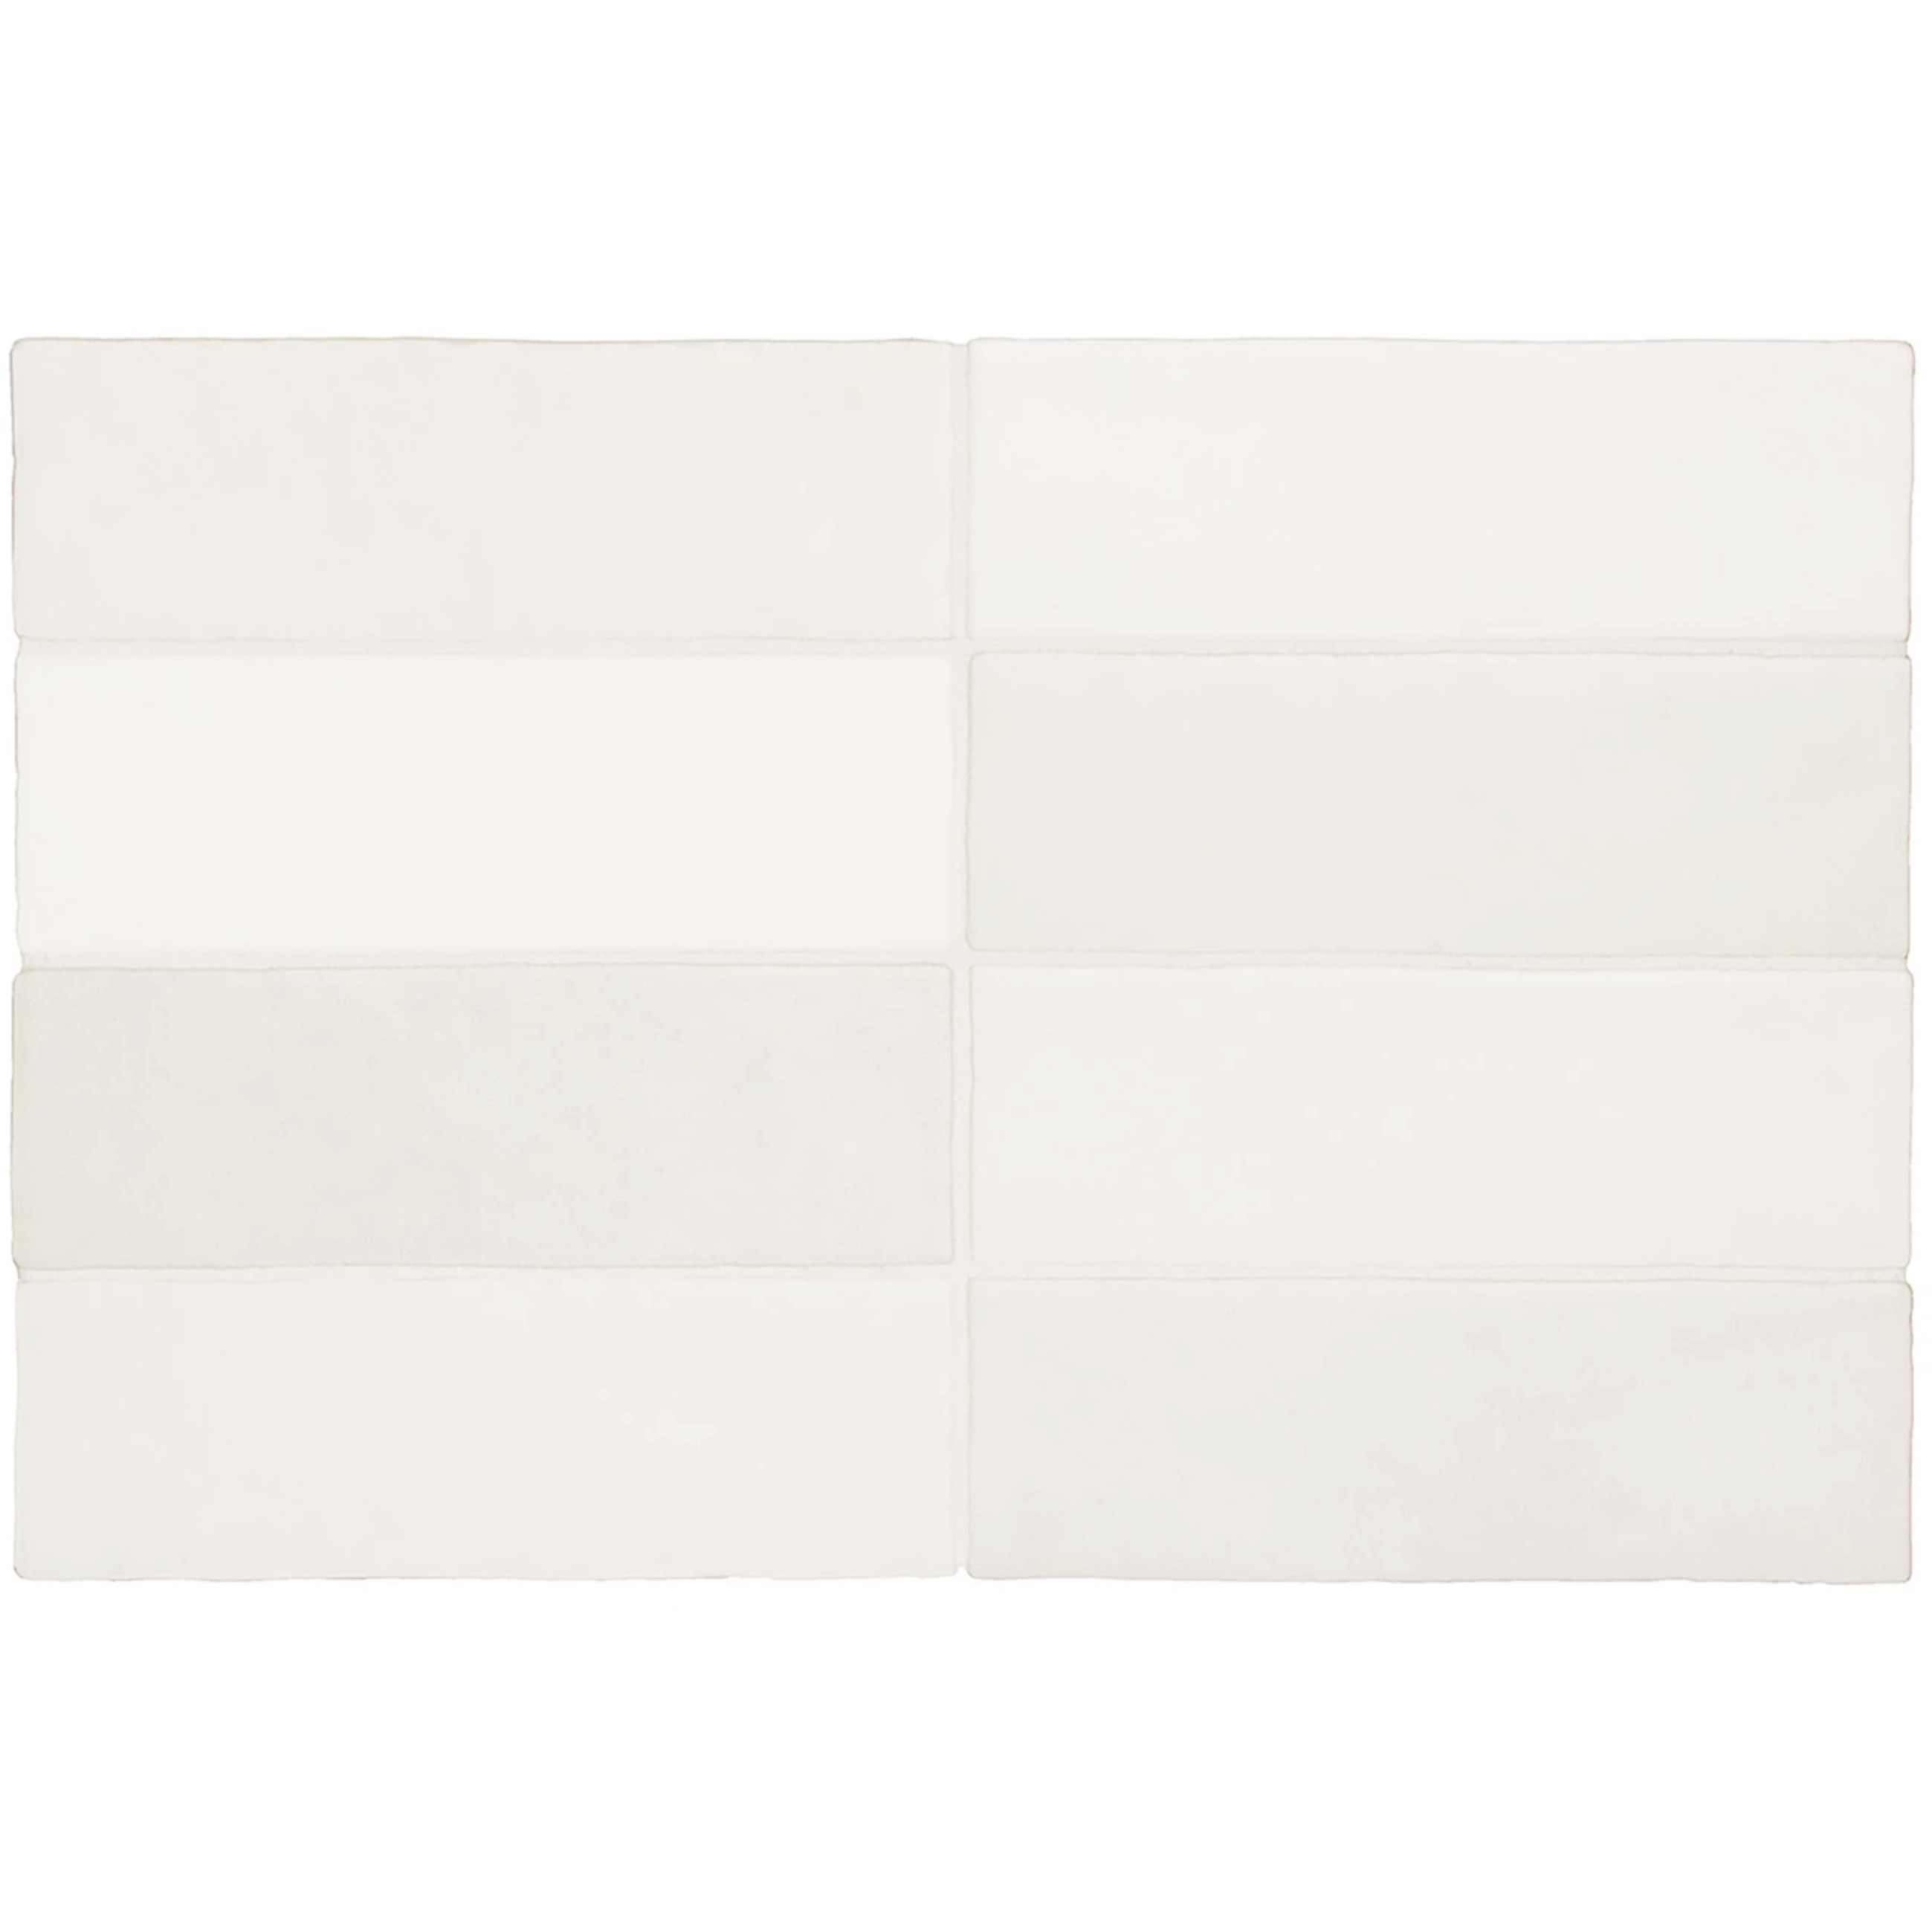 LAVA BIANCO MATT 6.5x20 - Mini Me Tiles